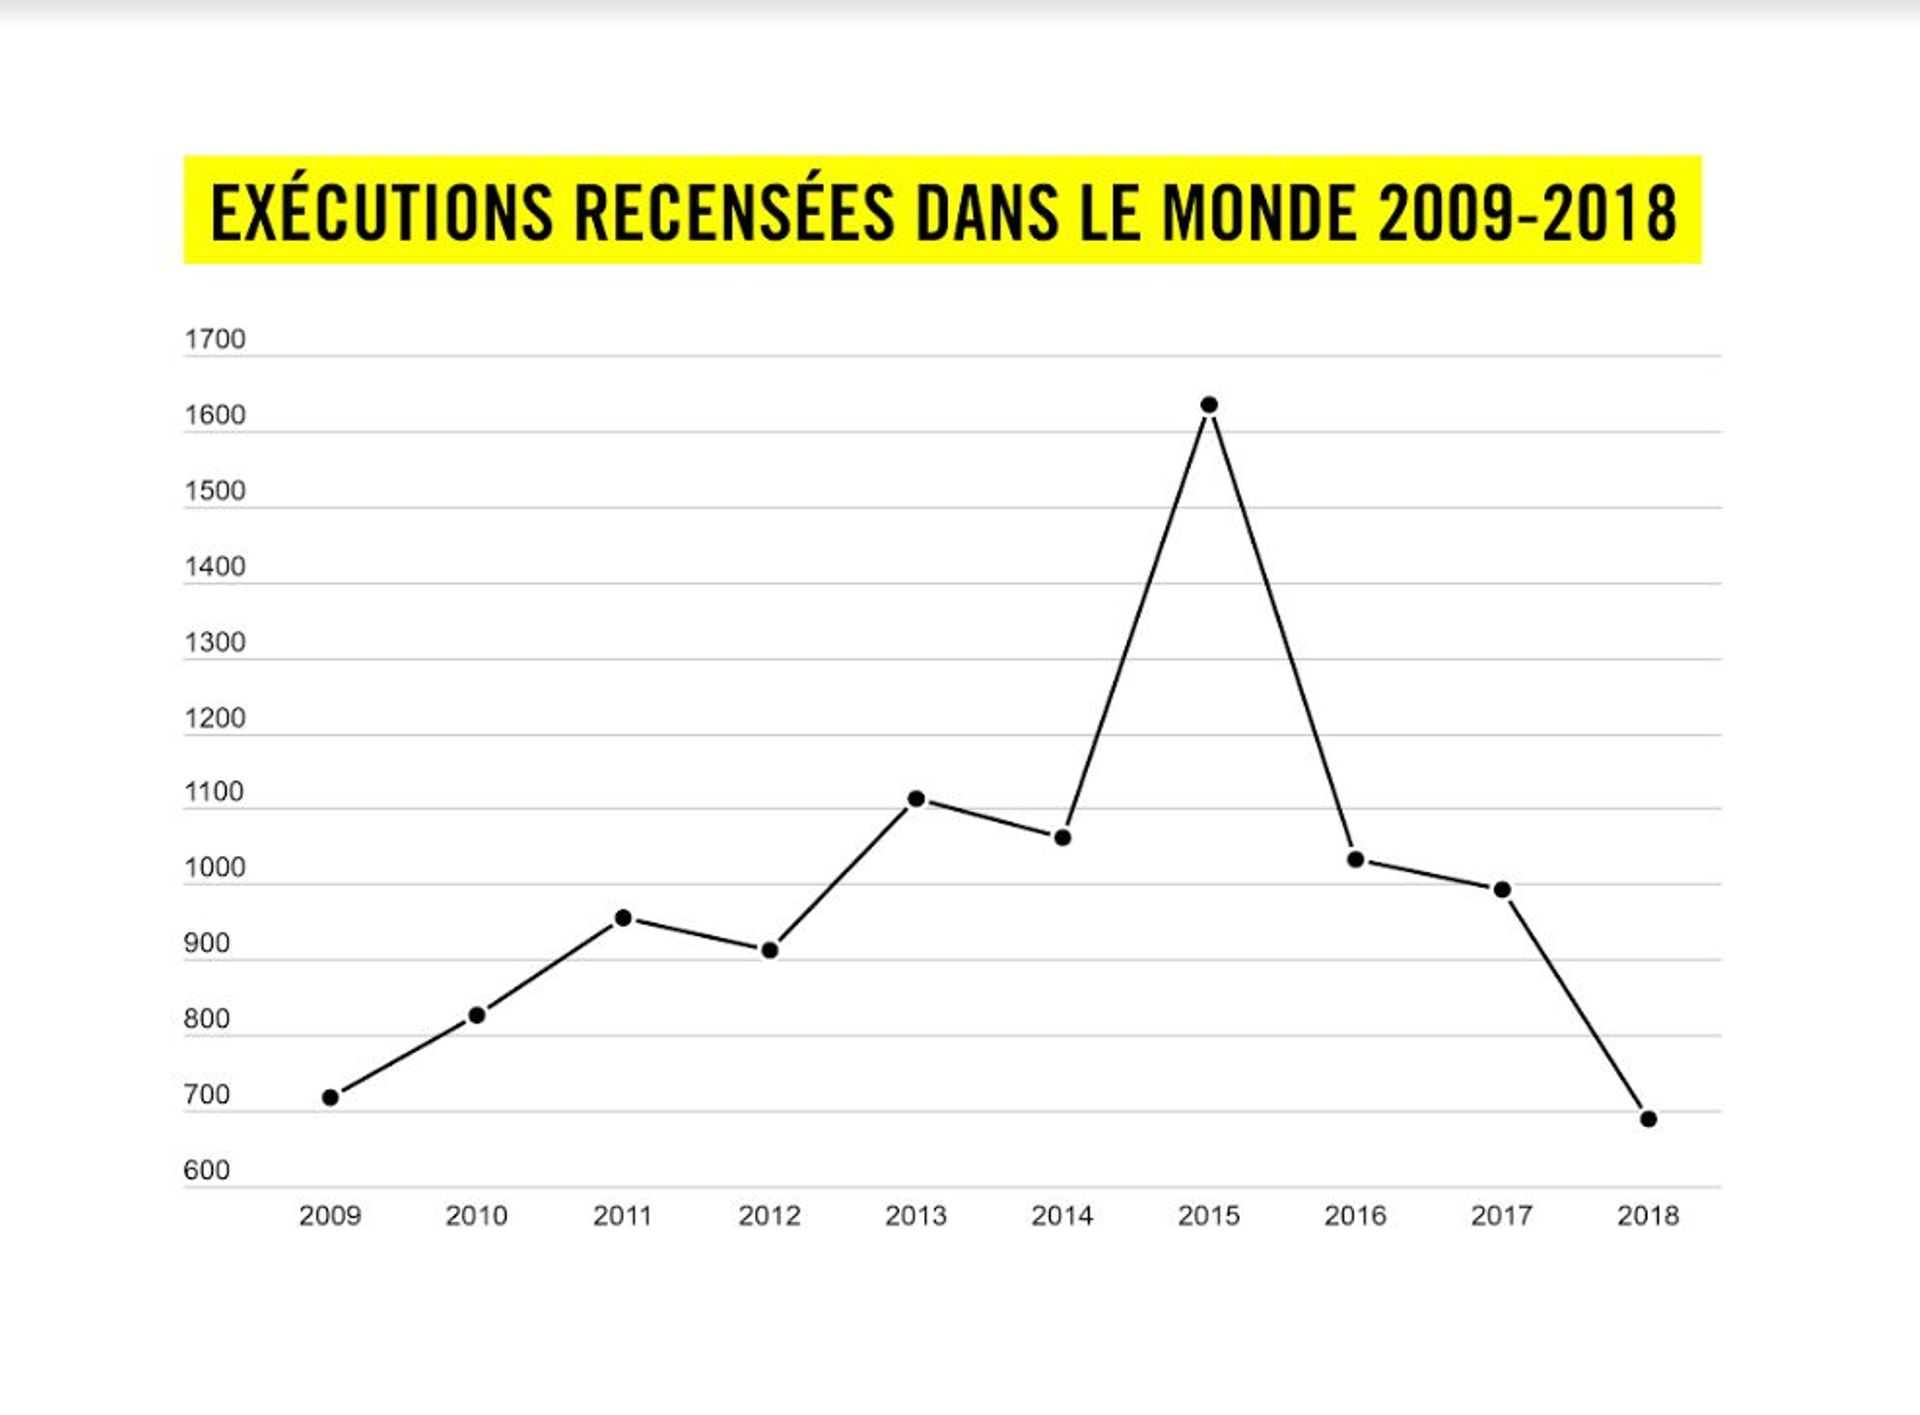 Evolution du nombre d'exécutions dans le monde entre 2009 et 2018